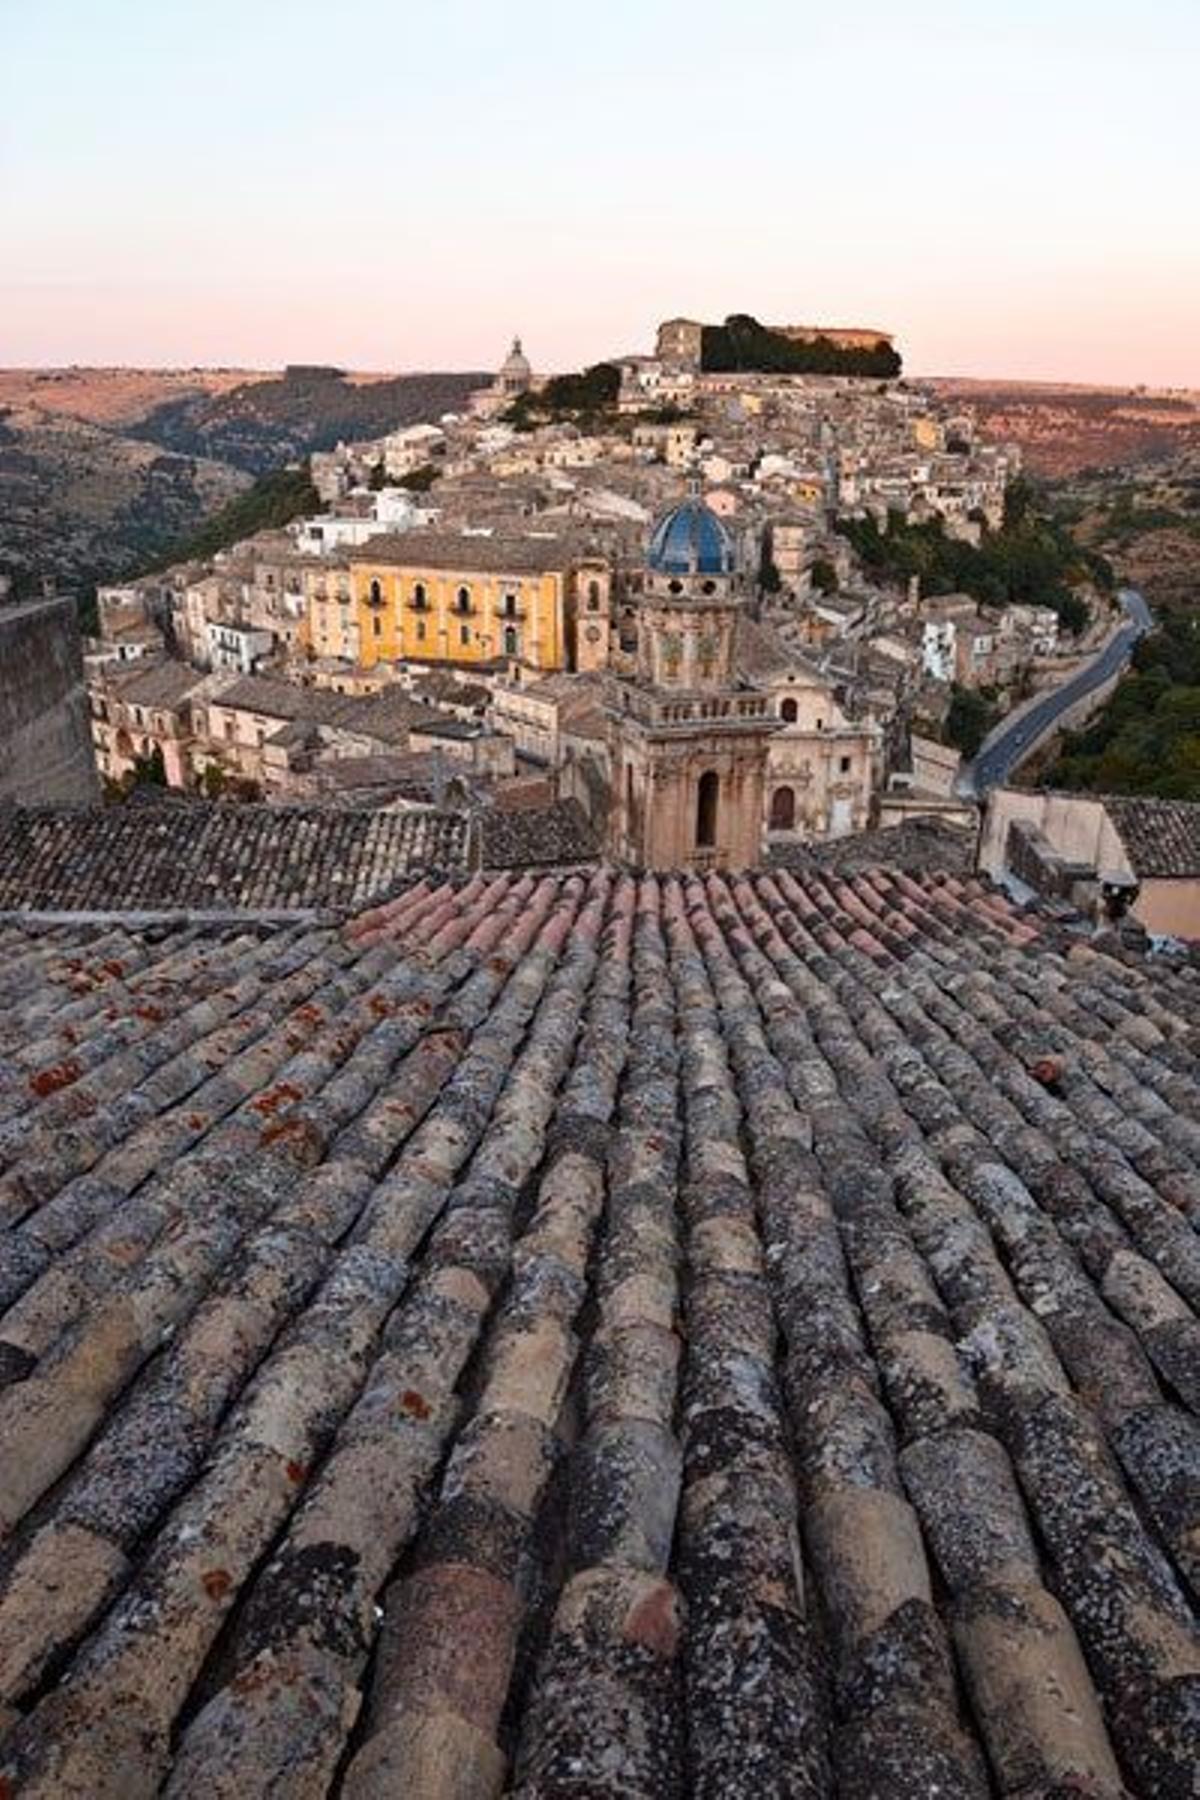 Ragusa cuenta con un excepcional catálogo de palacios y templos en un bello armazón medieval.